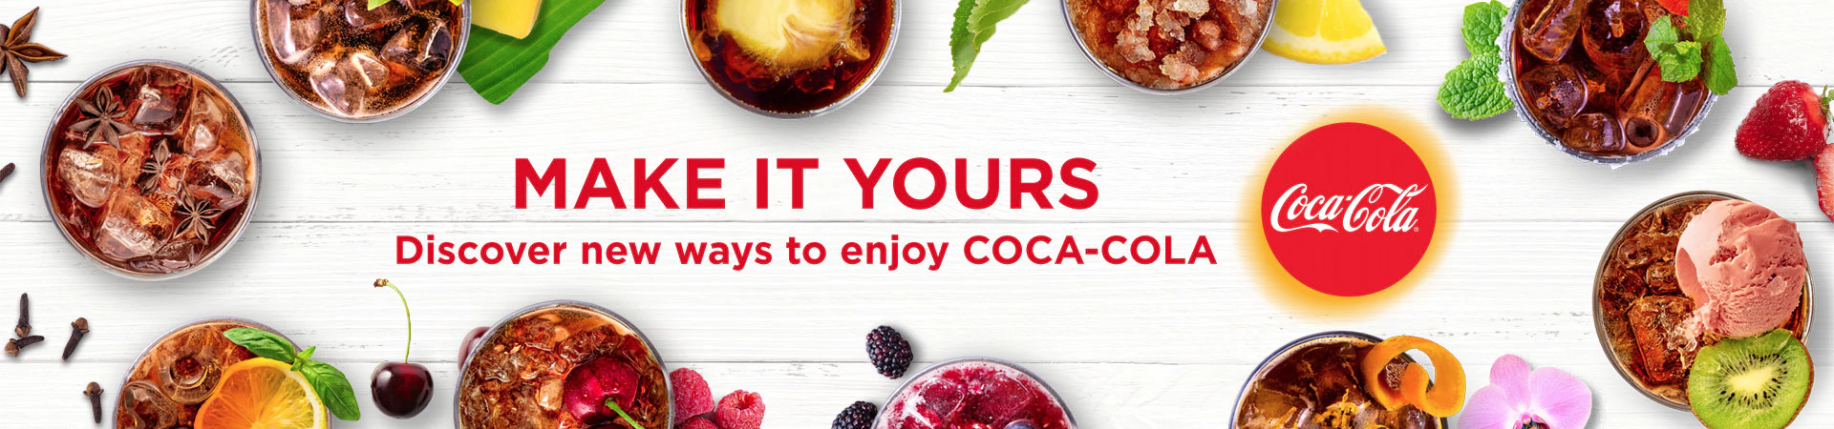 Coca-cola website banner